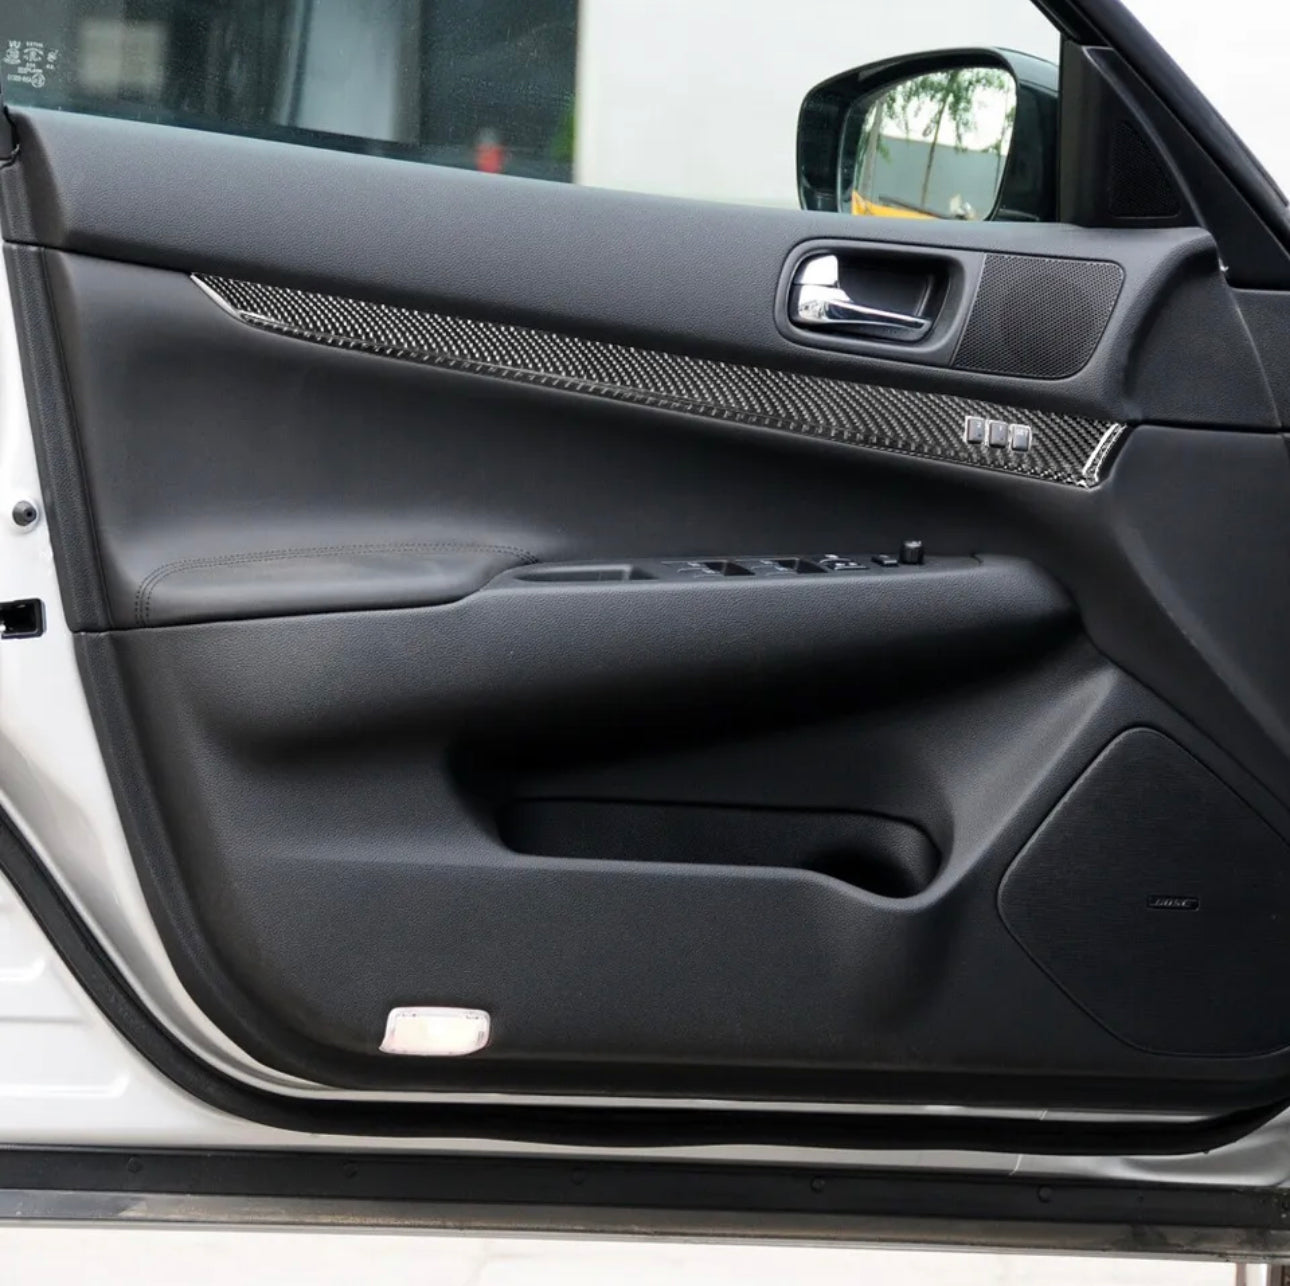 8Pcs Carbon Fiber Interior Door Panel Cover Trim For Infiniti G37 Sedan 2008-14